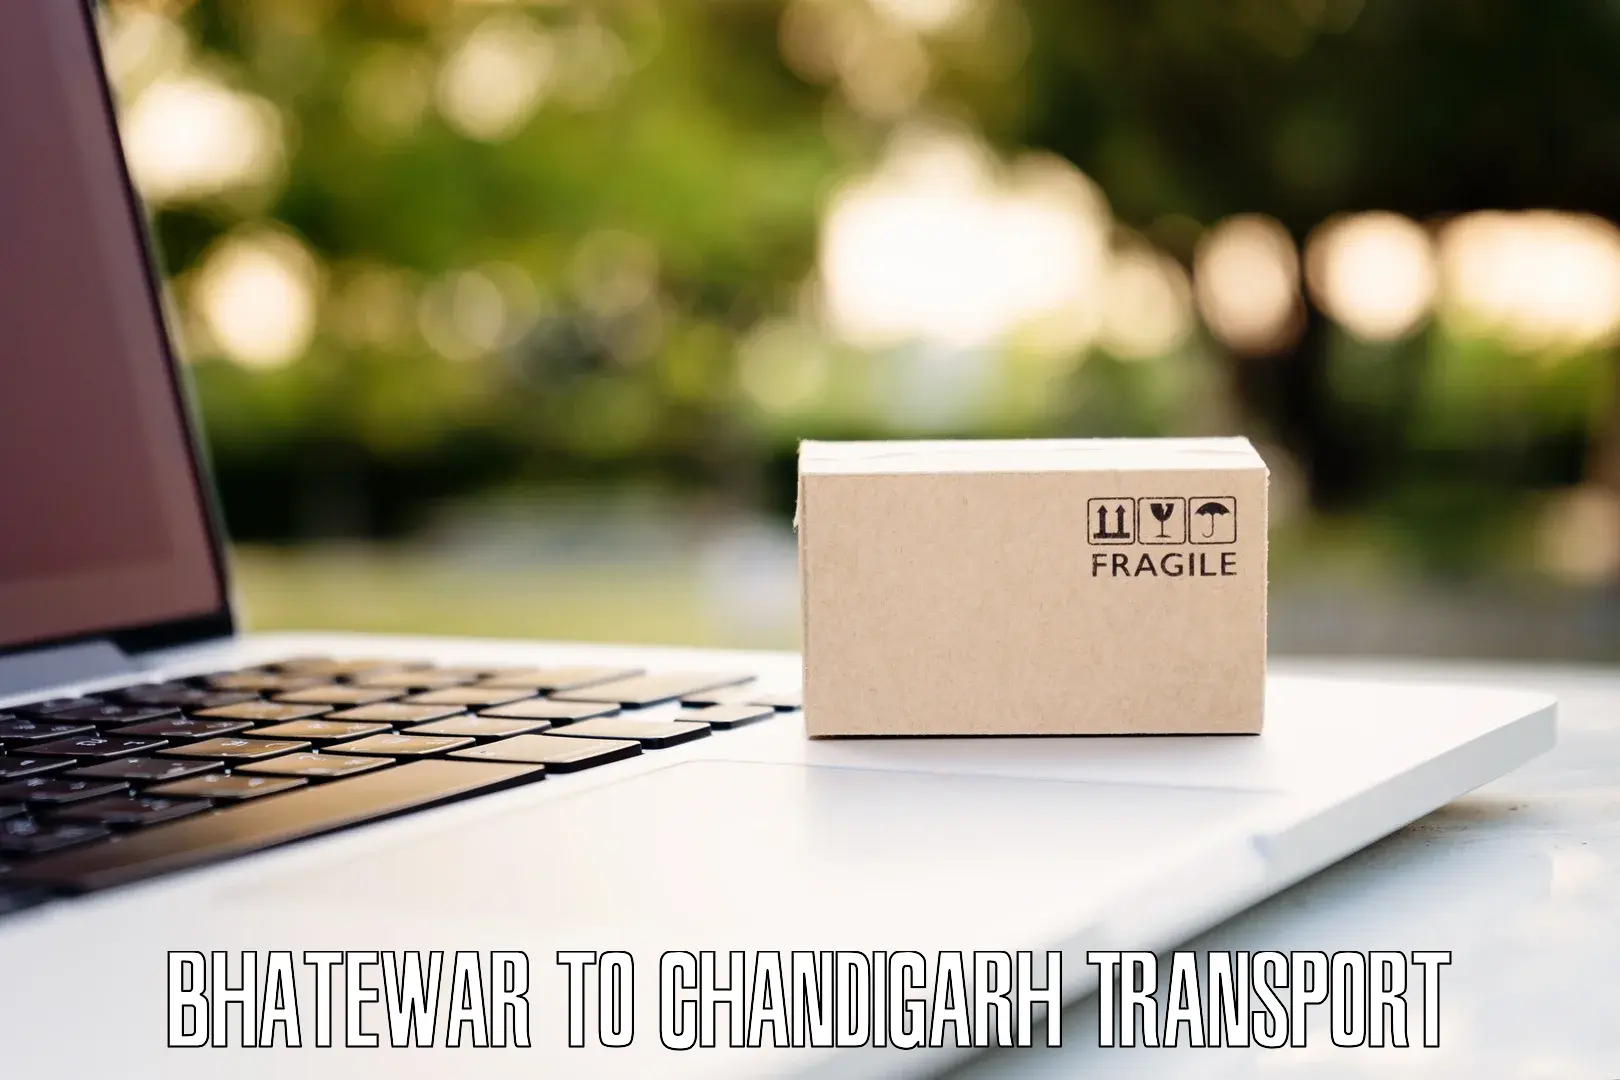 Two wheeler parcel service Bhatewar to Chandigarh